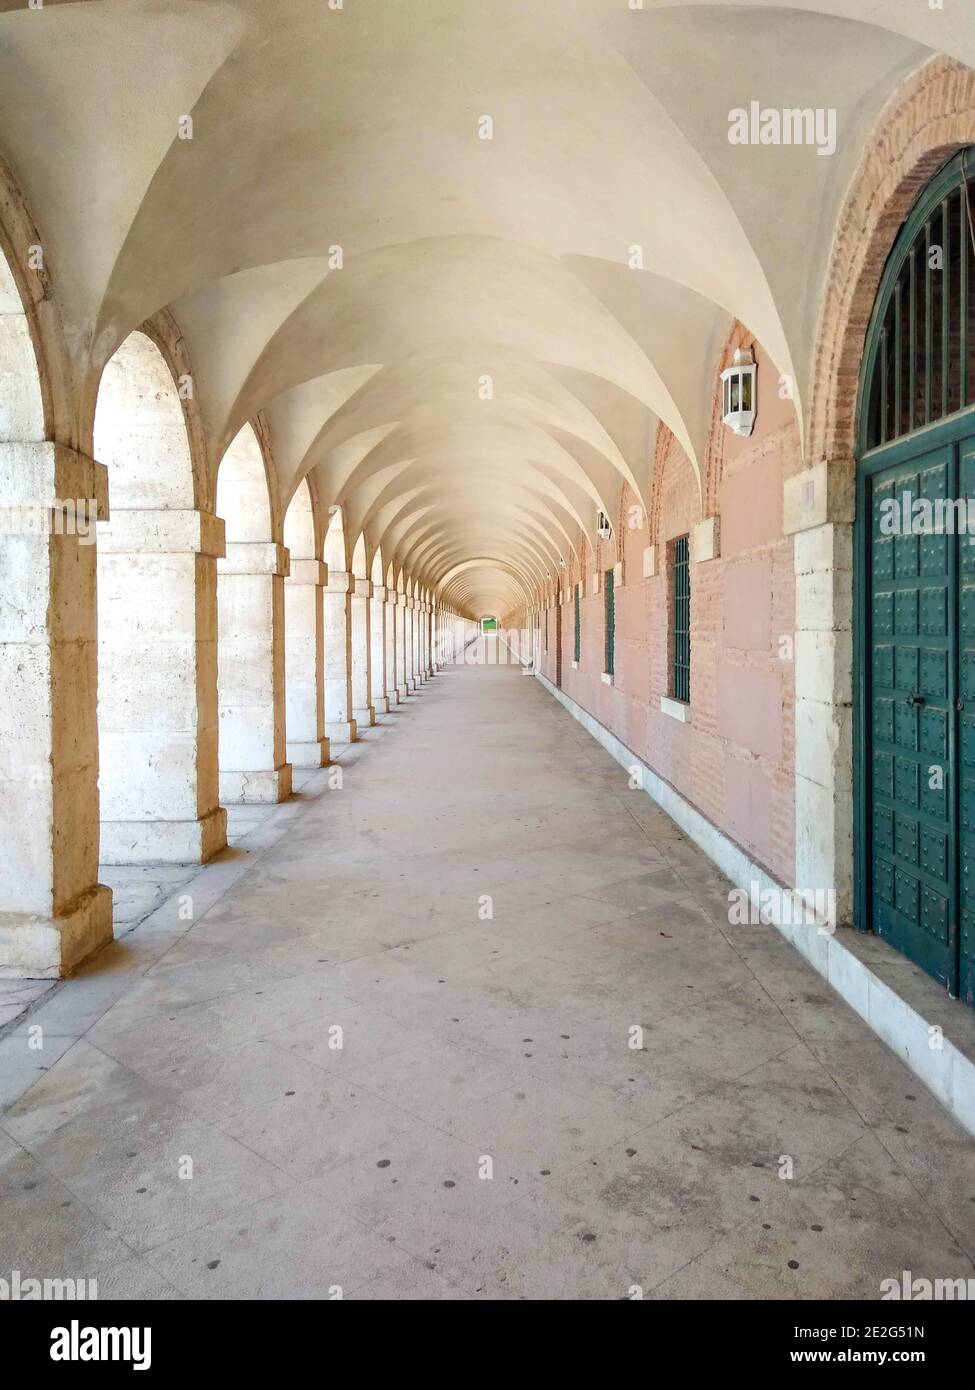 Palais royal d'Aranjuez avec passage voûté bordant la Plaza de Parejas. Le Palacio Real de Aranjuez est d'architecture Renaissance. Espagne. Banque D'Images